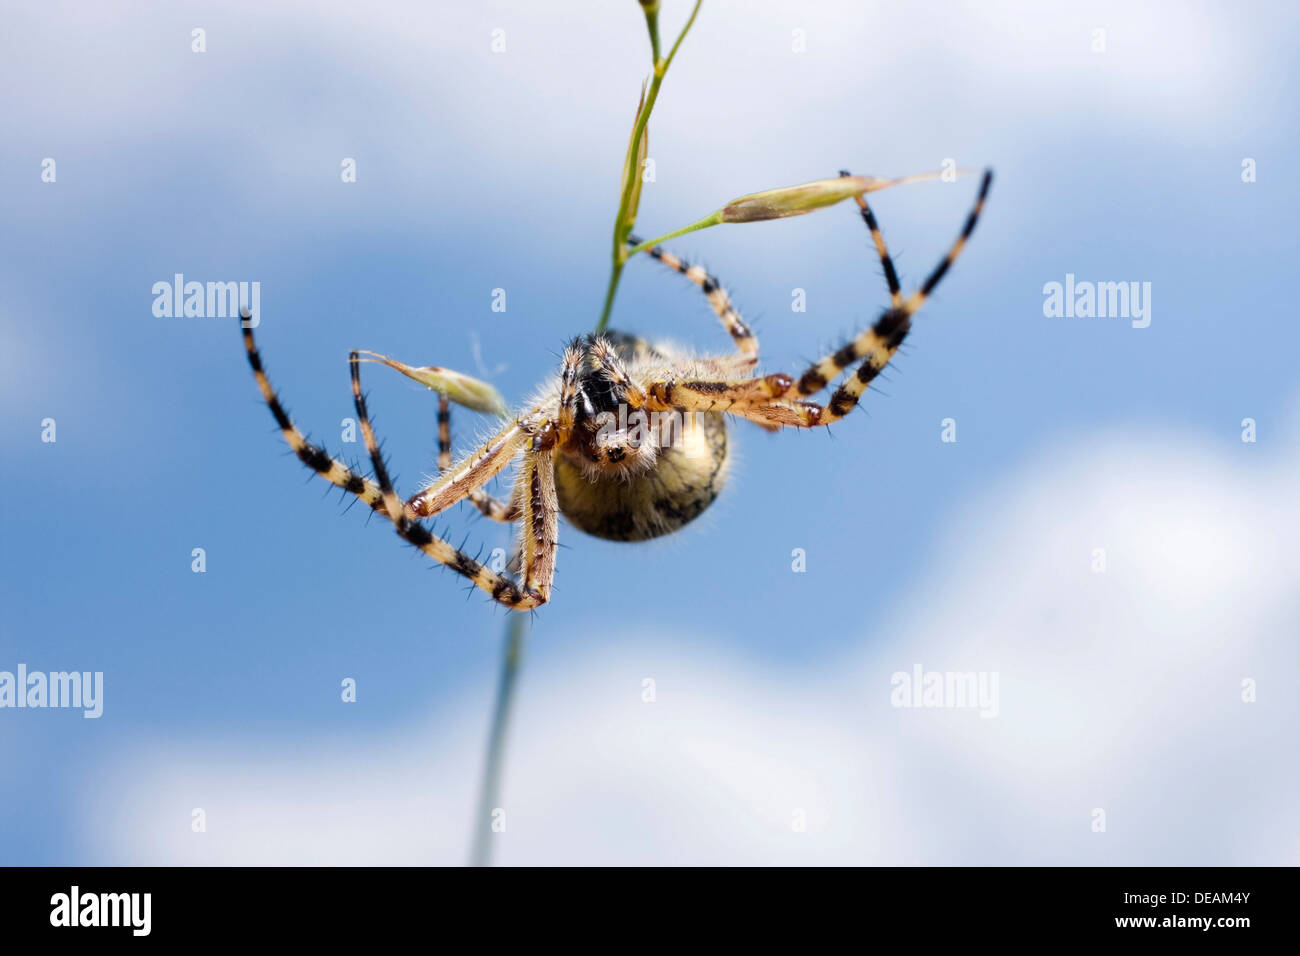 Oak spider (Aculepeira ceropegia) Stock Photo